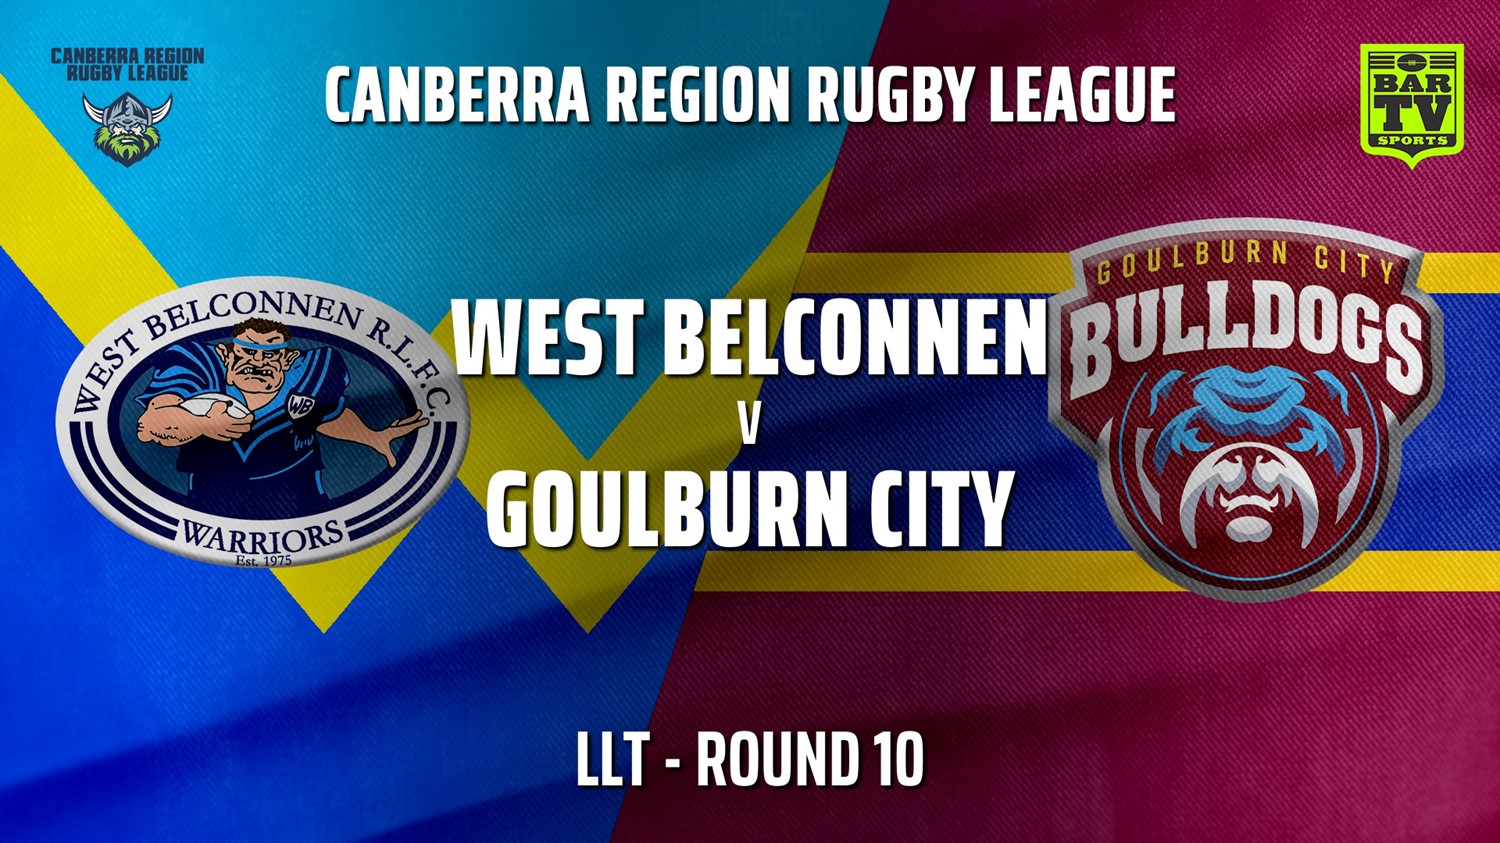 210703-Canberra Round 10 - LLT - West Belconnen Warriors v Goulburn City Bulldogs Slate Image